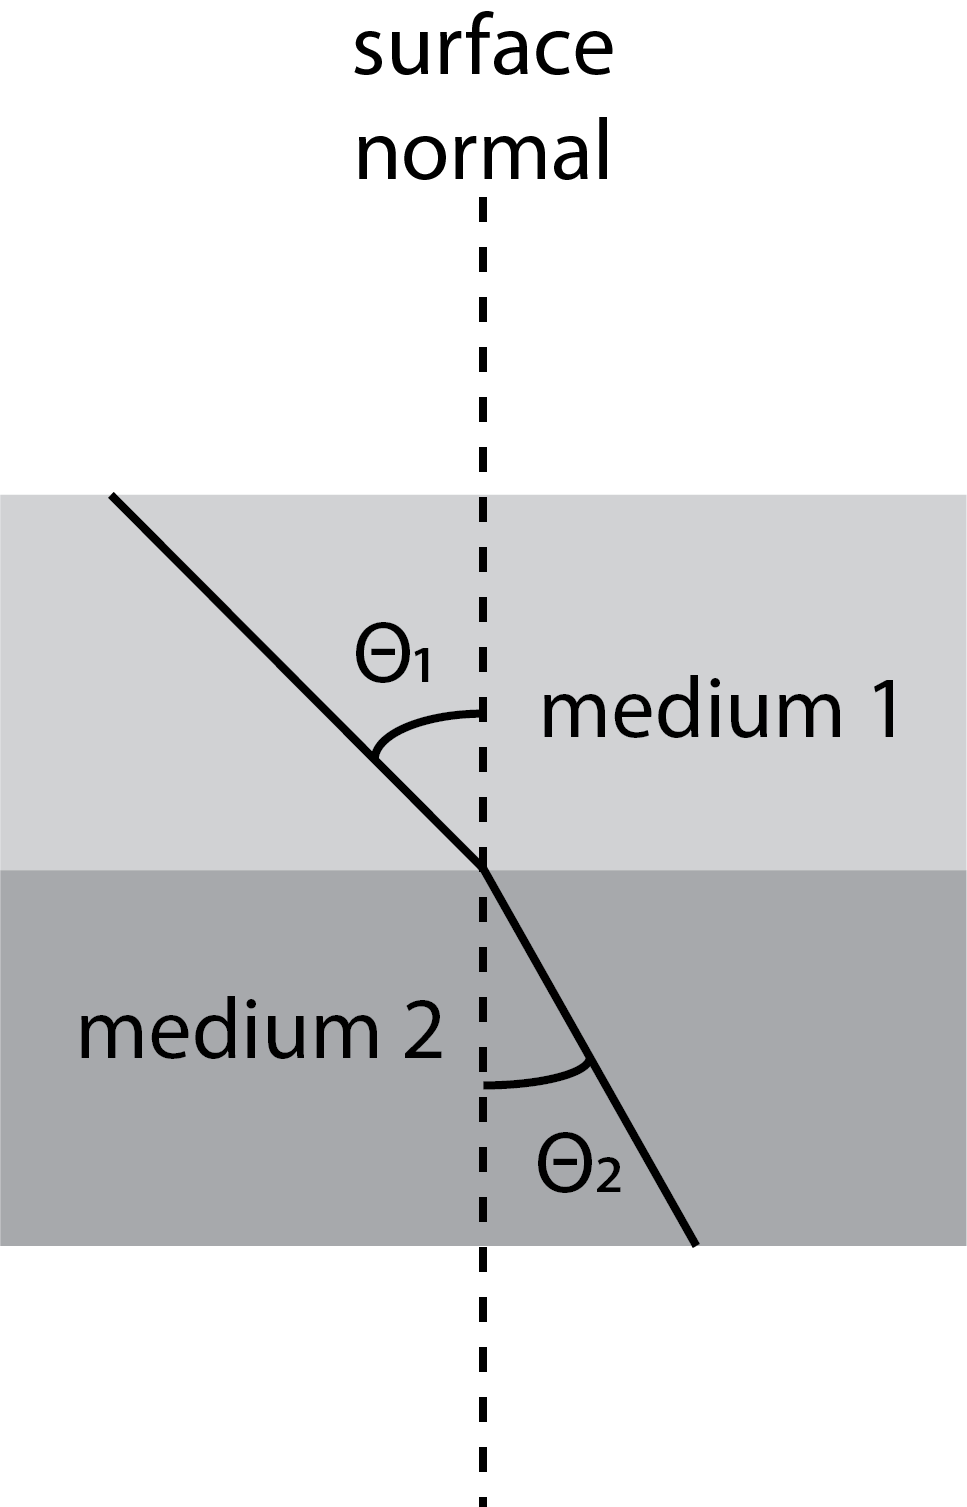 Ilustración de la refracción de la luz a medida que se mueve a través de la interfaz de dos medios con diferentes índices de refracción.